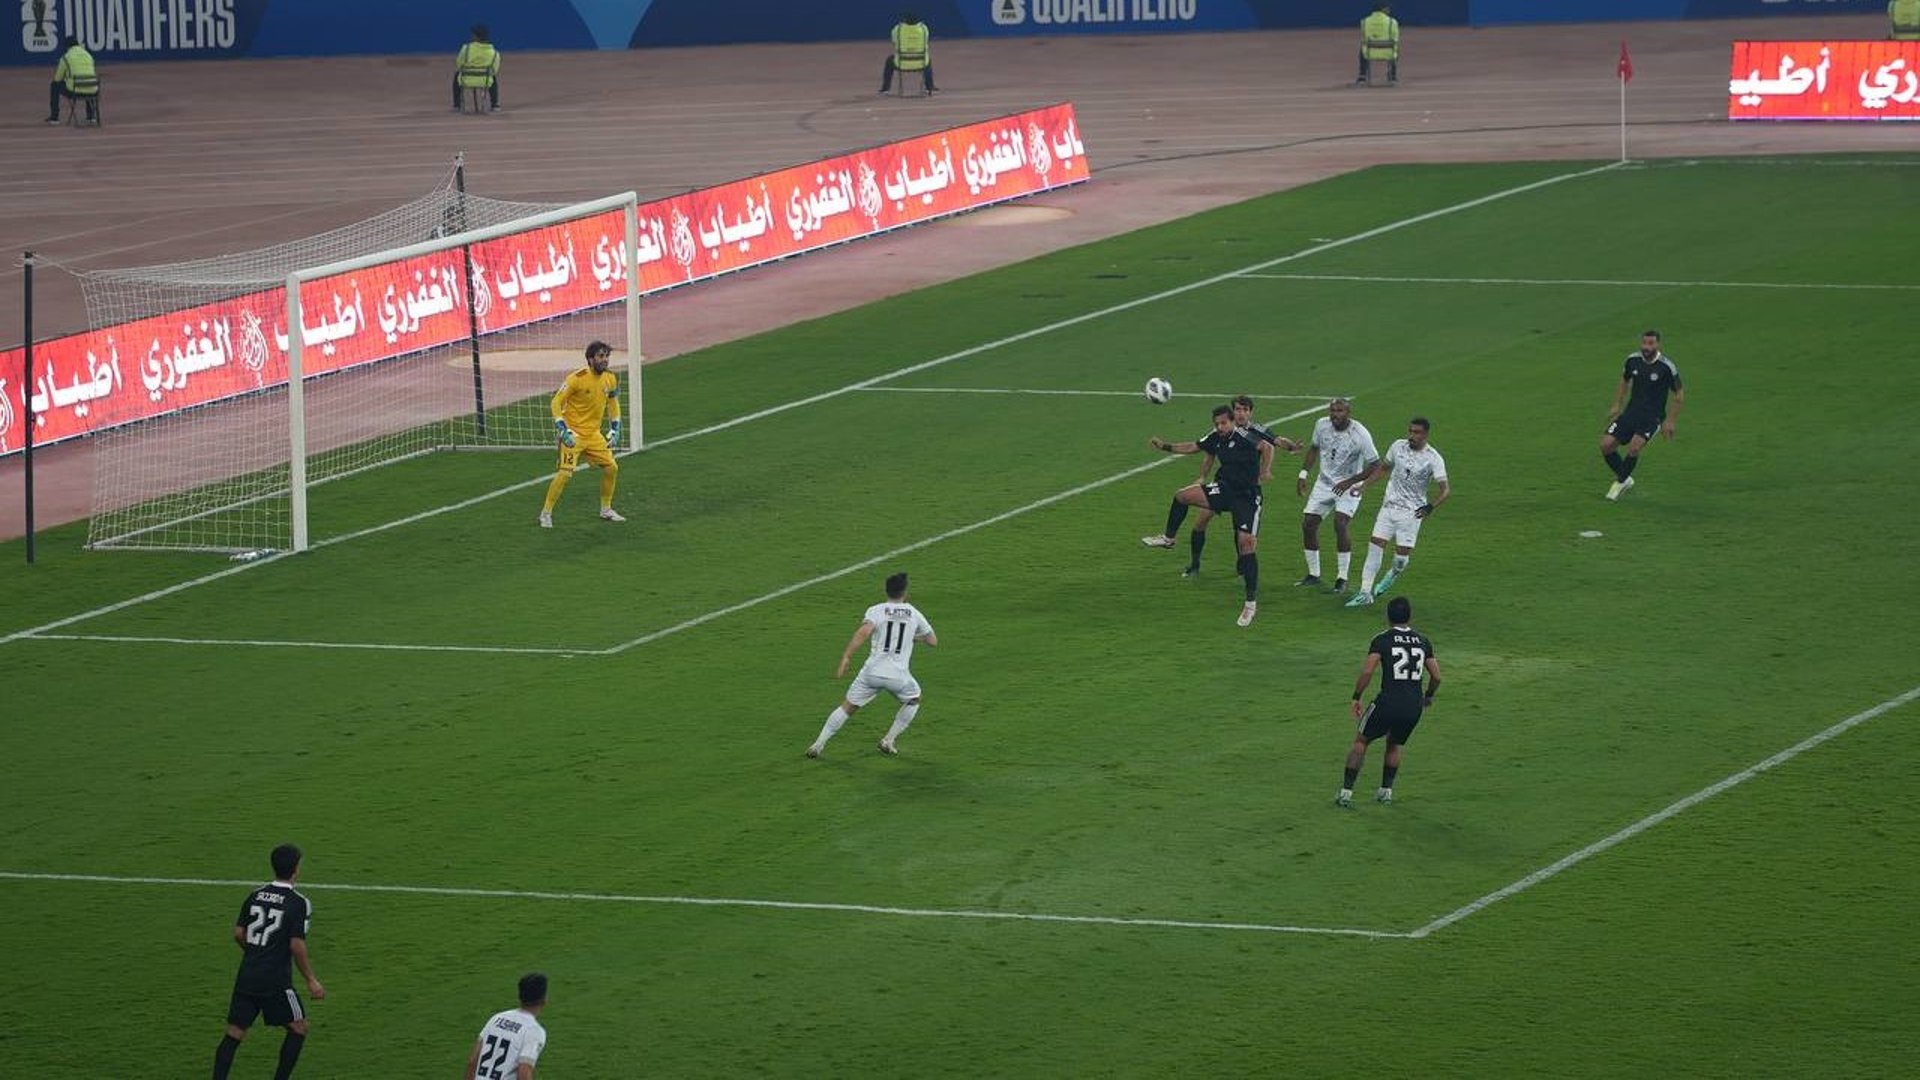 صور من مباراة اليوم.. الزوراء ودّع كأس الاتحاد رغم الفوز على الرفاع البحريني